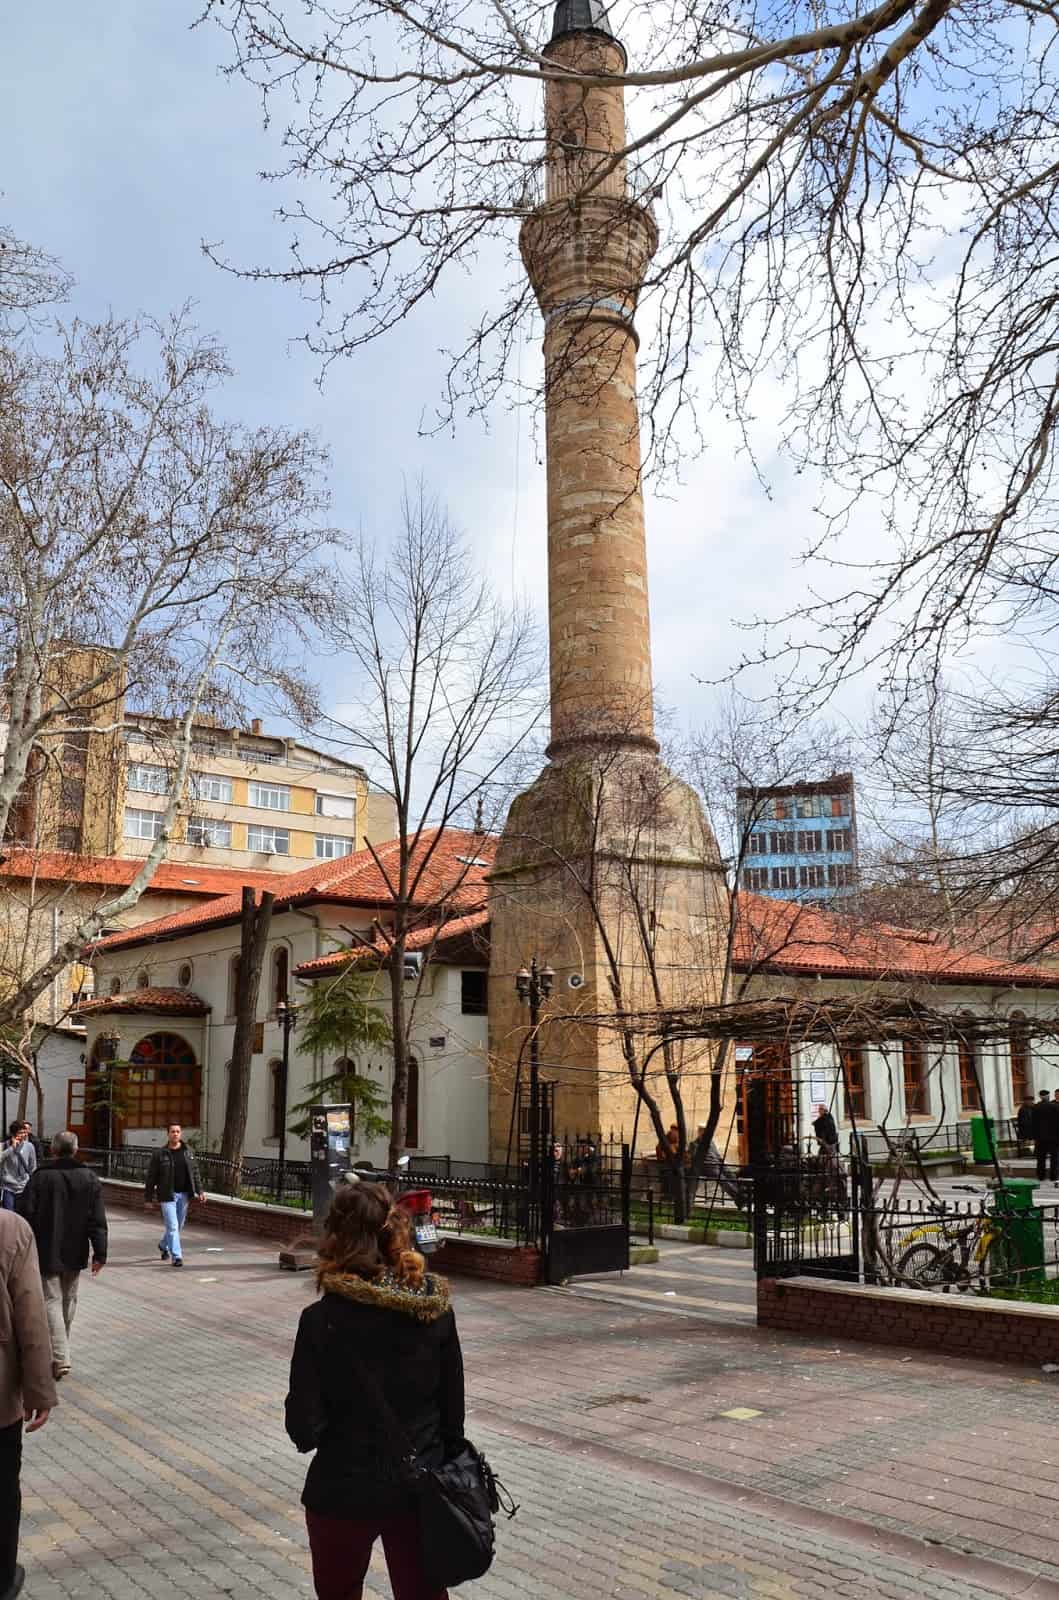 Ali Pasha Mosque in Kütahya, Turkey